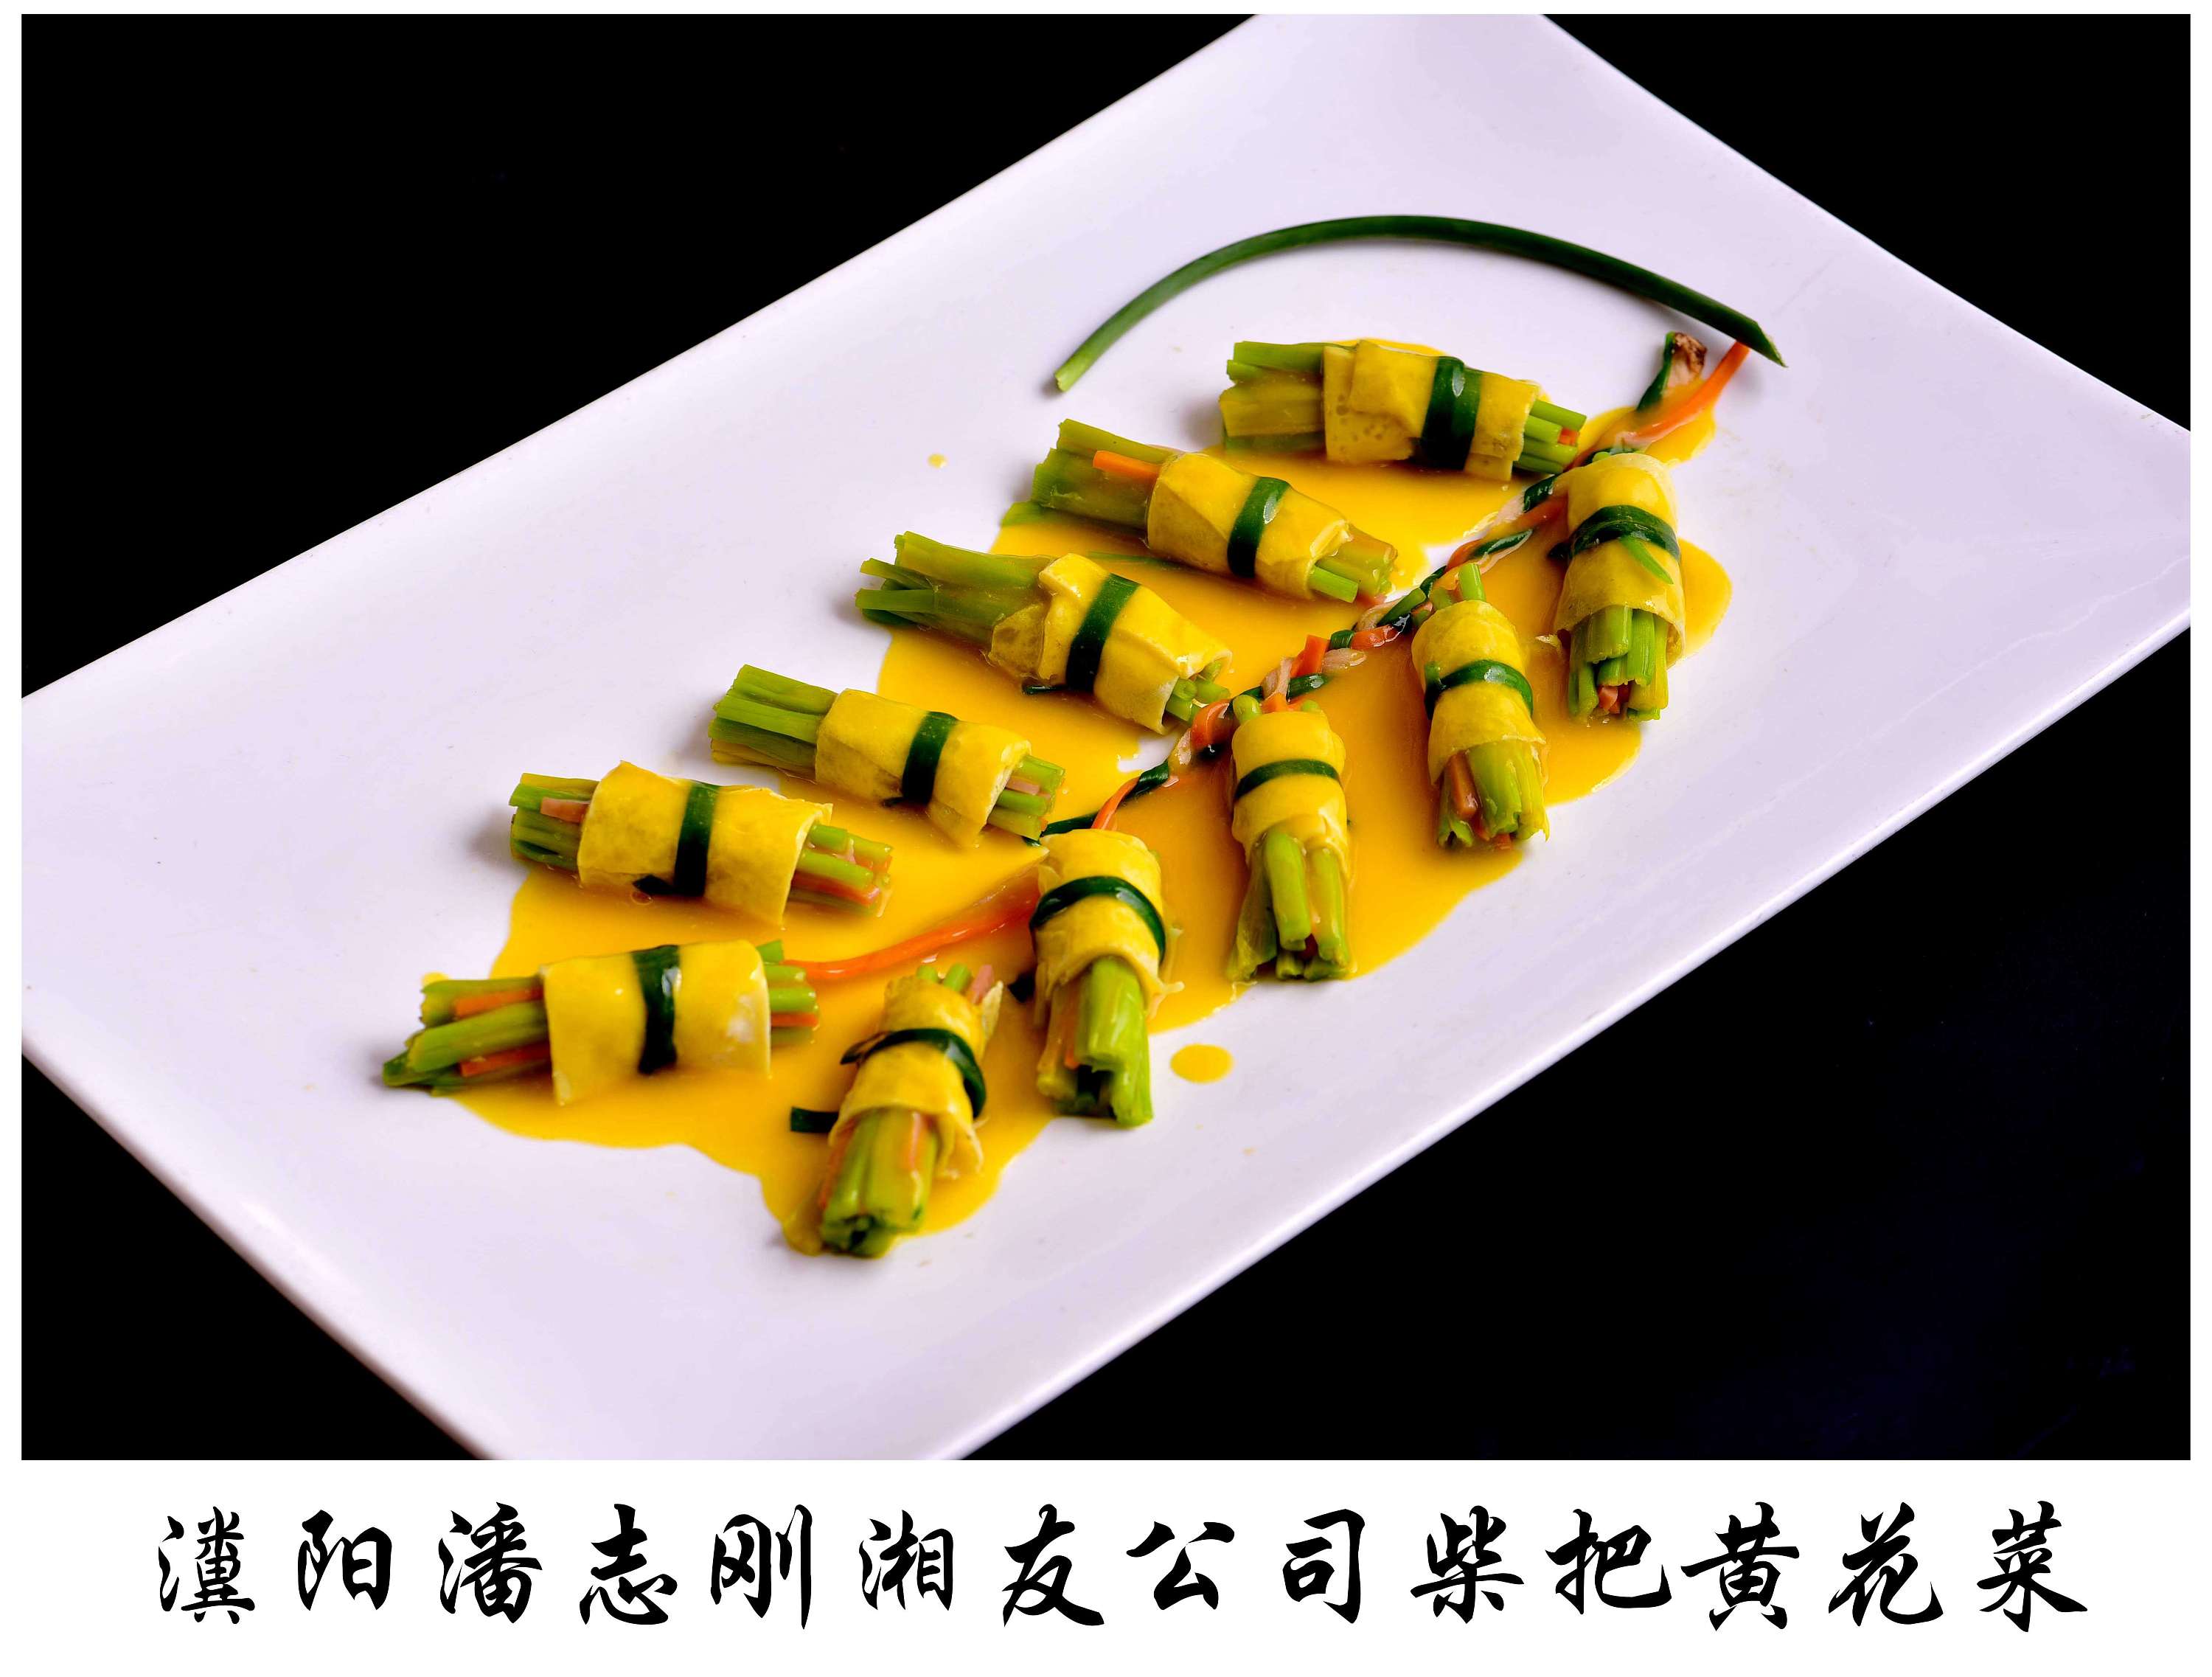 中国祁东黄花菜节创新烹饪大赛全部作品